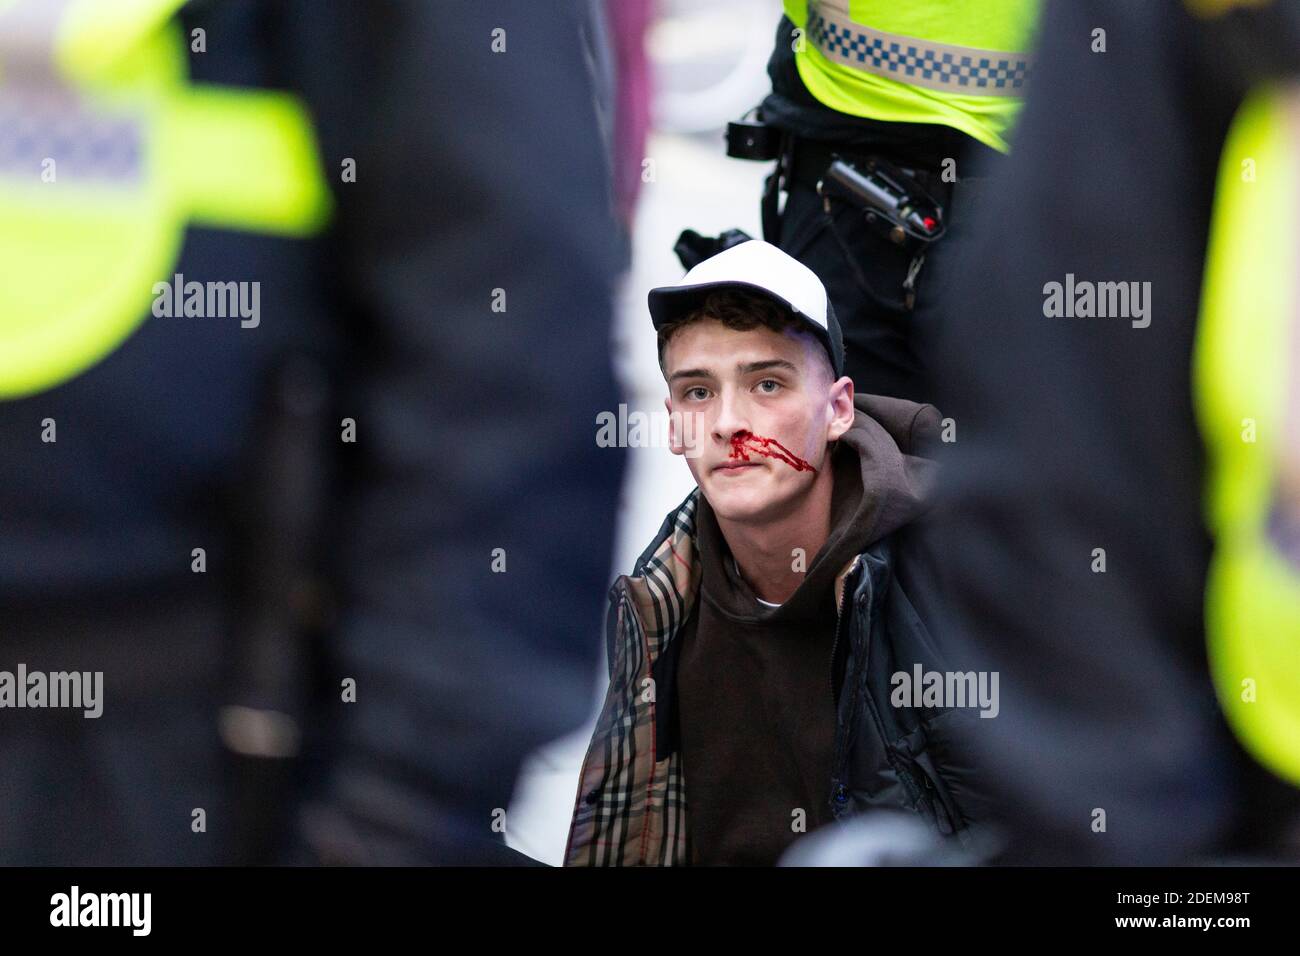 Protesta anti-lock-down, Oxford Street, Londra, 28 novembre 2020. Un protestante arrestato con sangue siede sul marciapiede circondato dalla polizia. Foto Stock